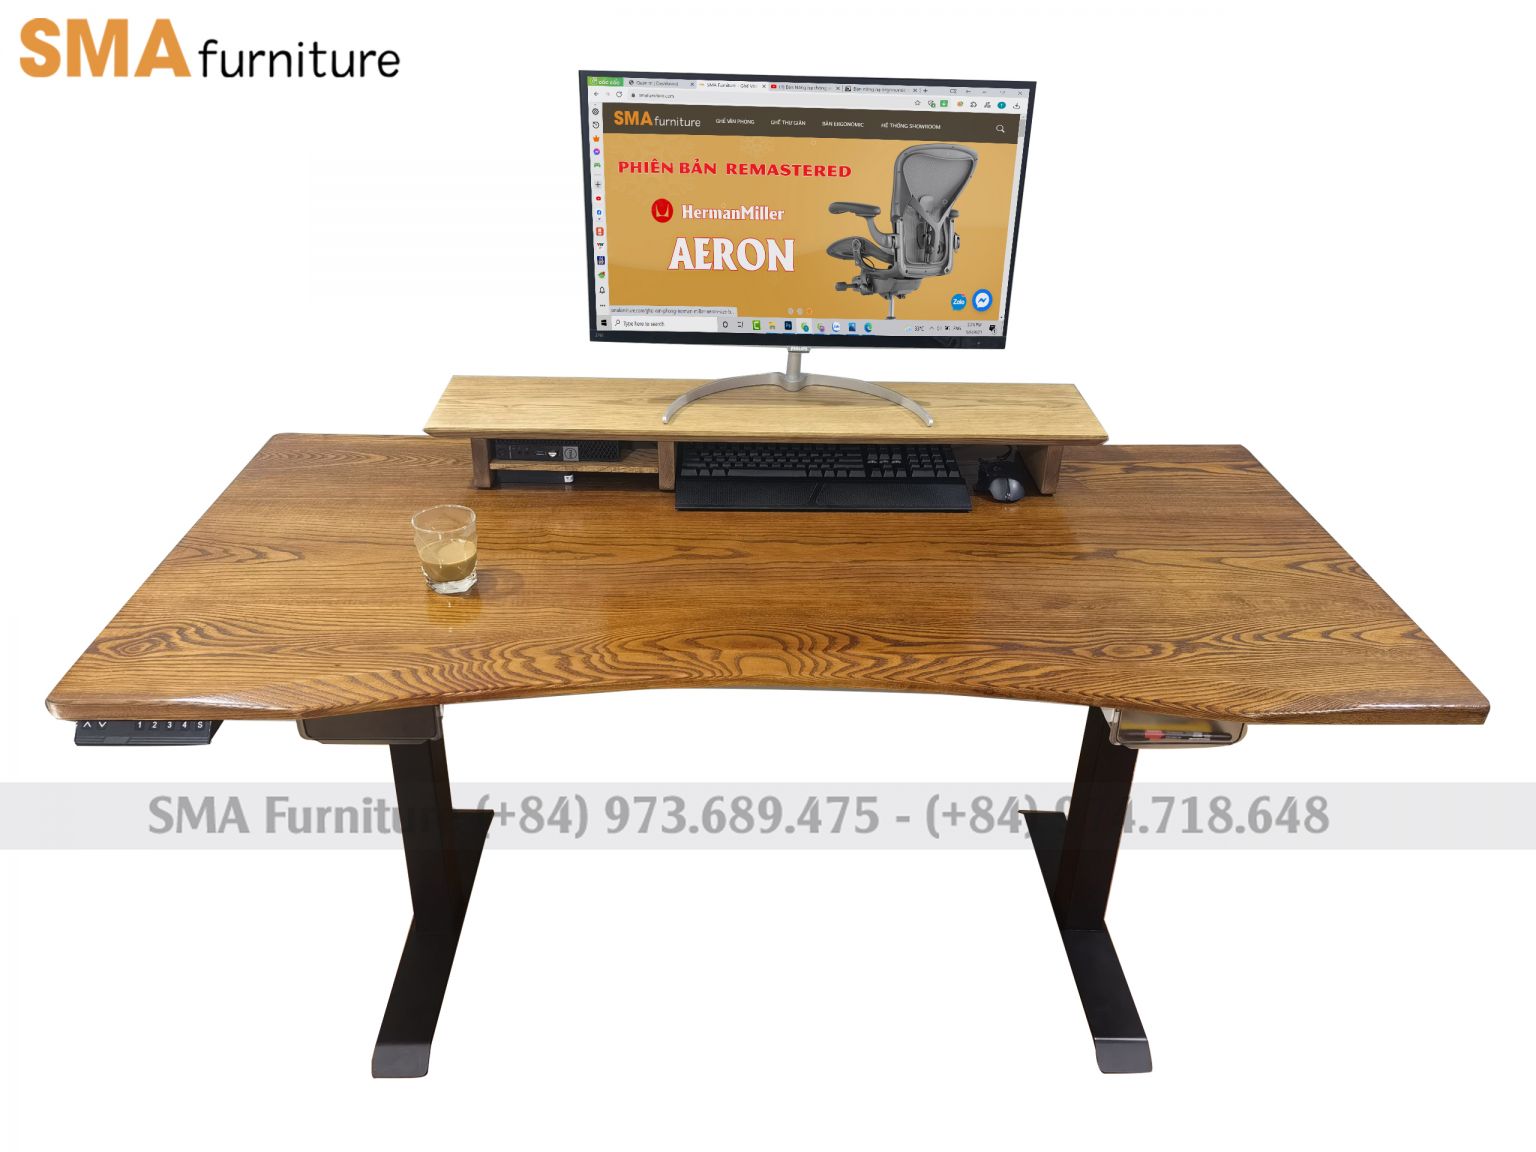 Chân bàn nâng hạ với mặt bàn bằng gỗ sồi cao cấp